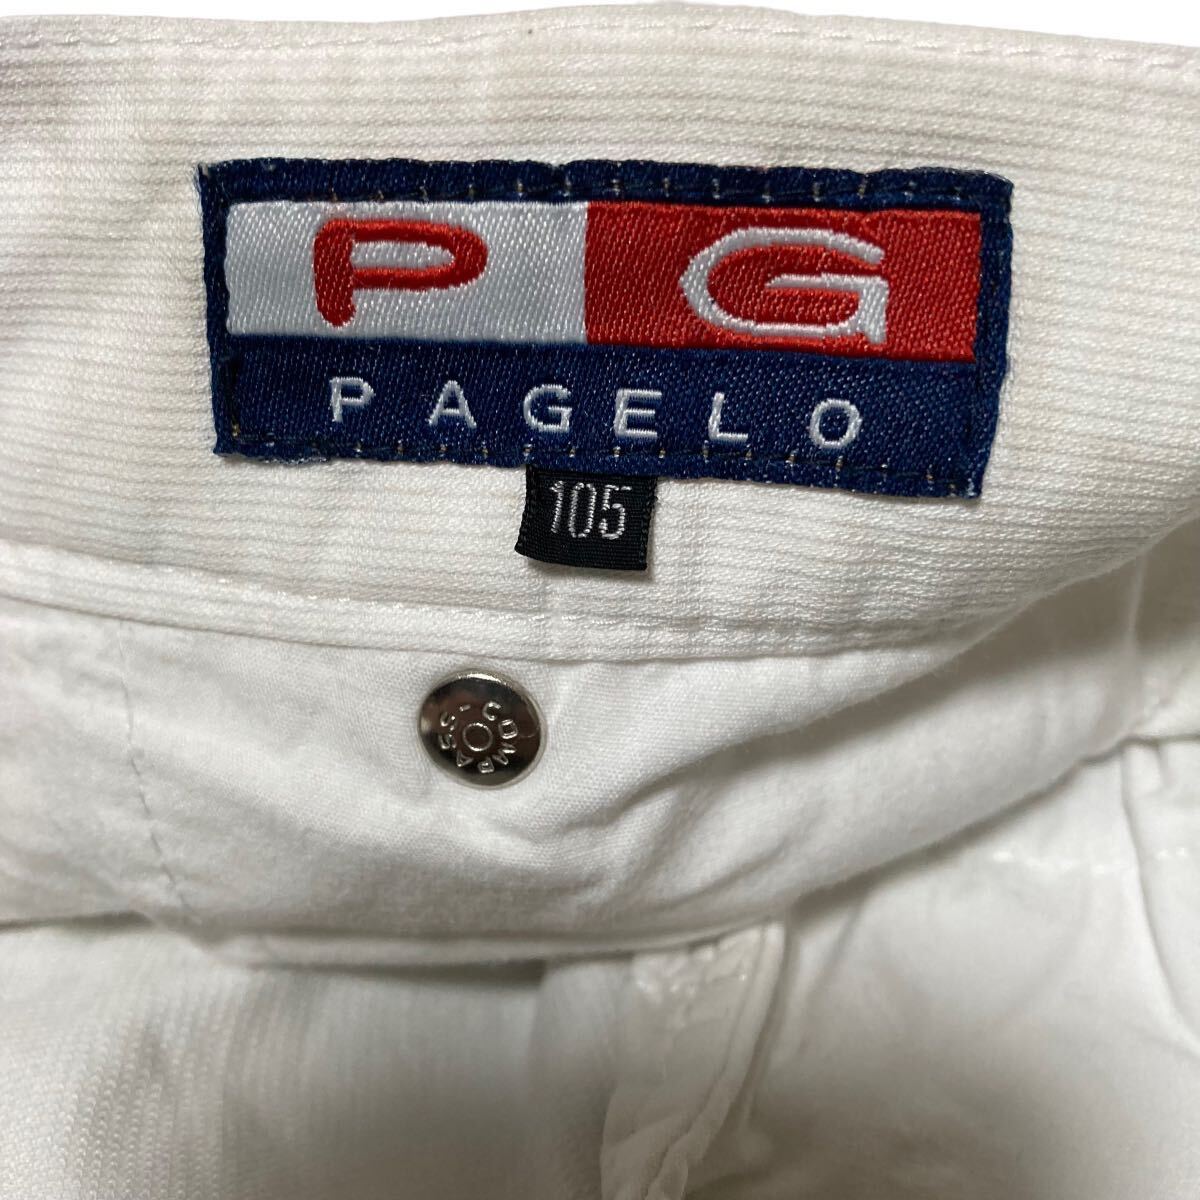 PAGELO パジェロ 白 カーゴパンツ 大きいサイズ 綿パンツ サイズ105 